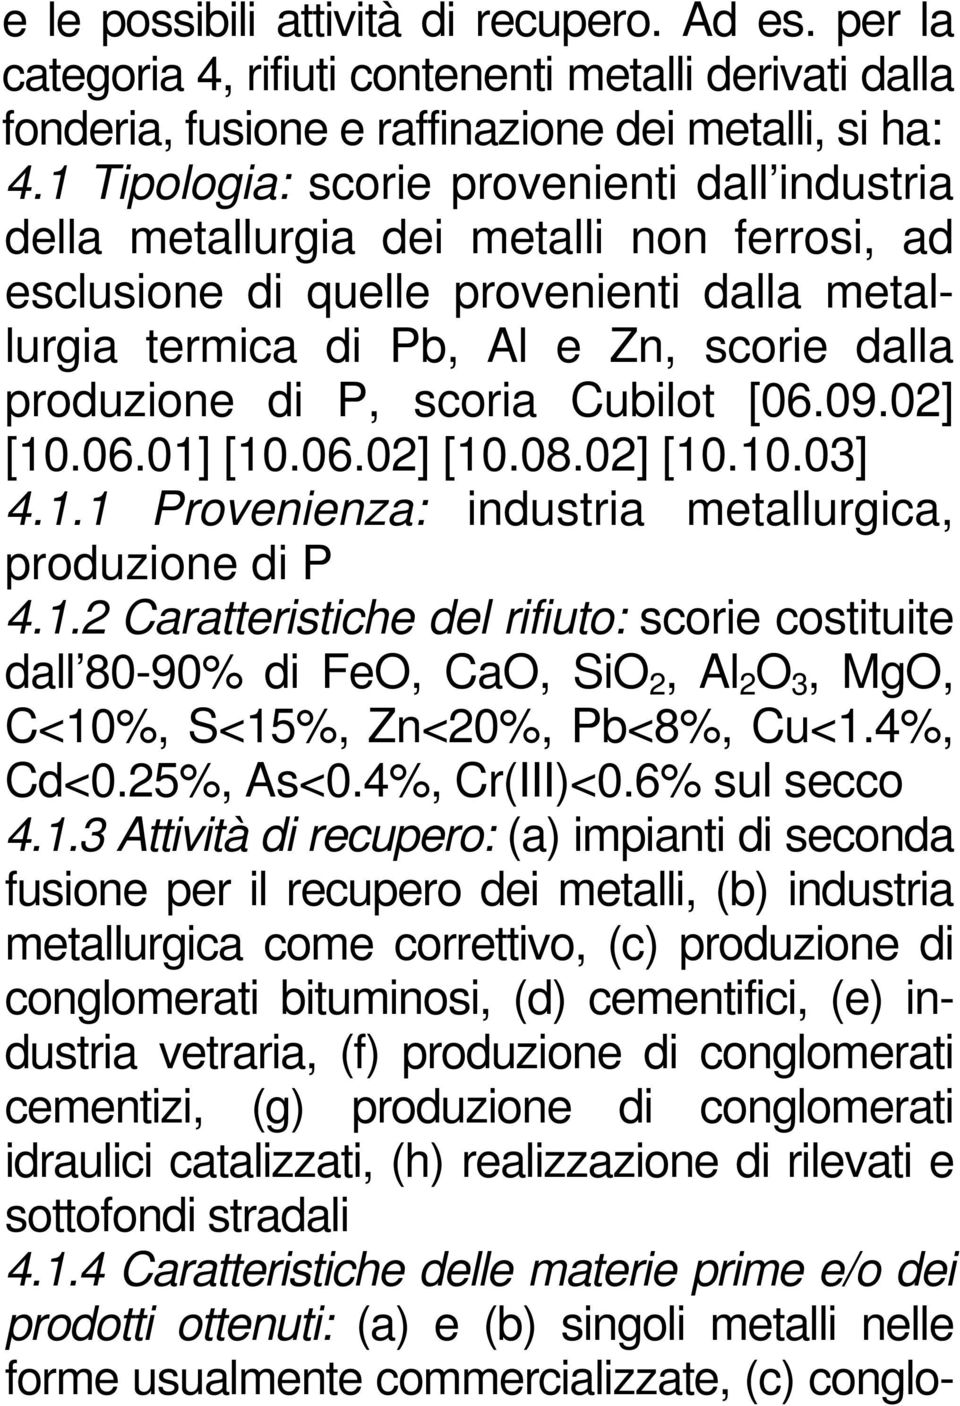 scoria Cubilot [06.09.02] [10.06.01] [10.06.02] [10.08.02] [10.10.03] 4.1.1 Provenienza: industria metallurgica, produzione di P 4.1.2 Caratteristiche del rifiuto: scorie costituite dall 80-90% di FeO, CaO, SiO 2, Al 2 O 3, MgO, C<10%, S<15%, Zn<20%, Pb<8%, Cu<1.